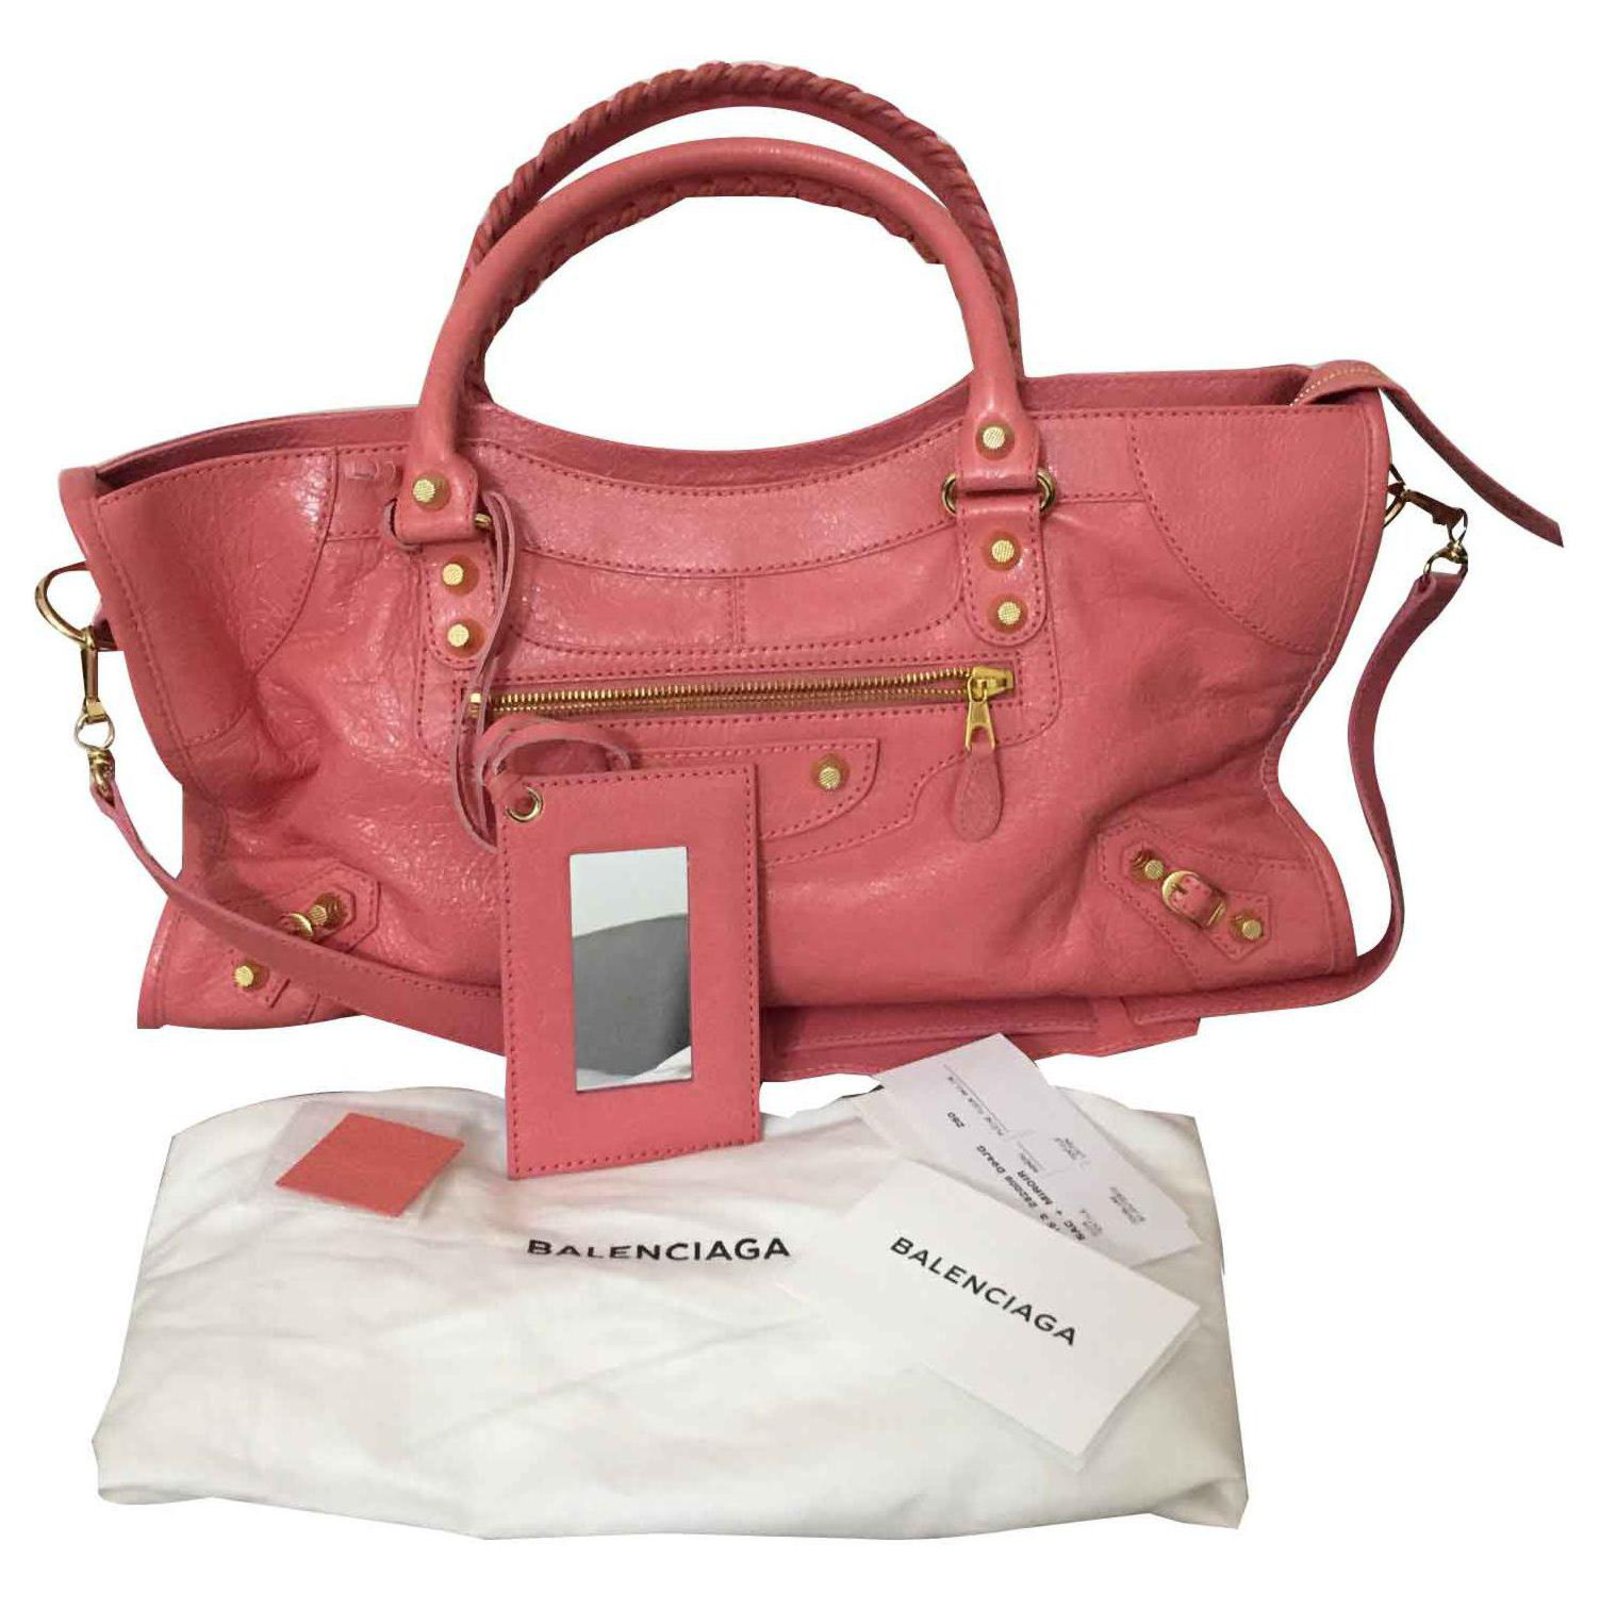 balenciaga handbags pink